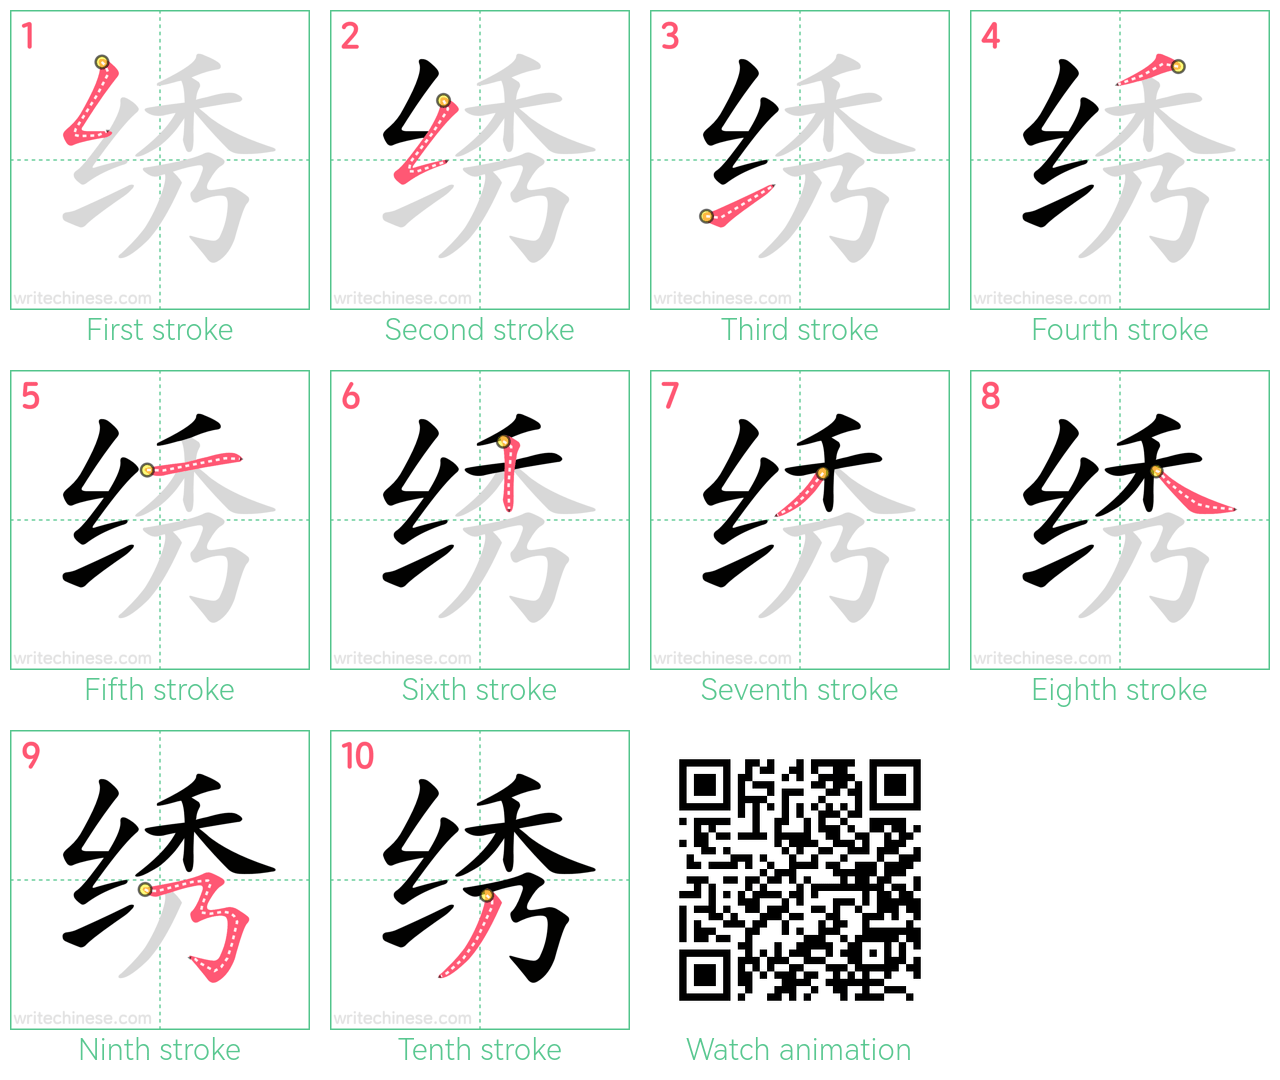 绣 step-by-step stroke order diagrams